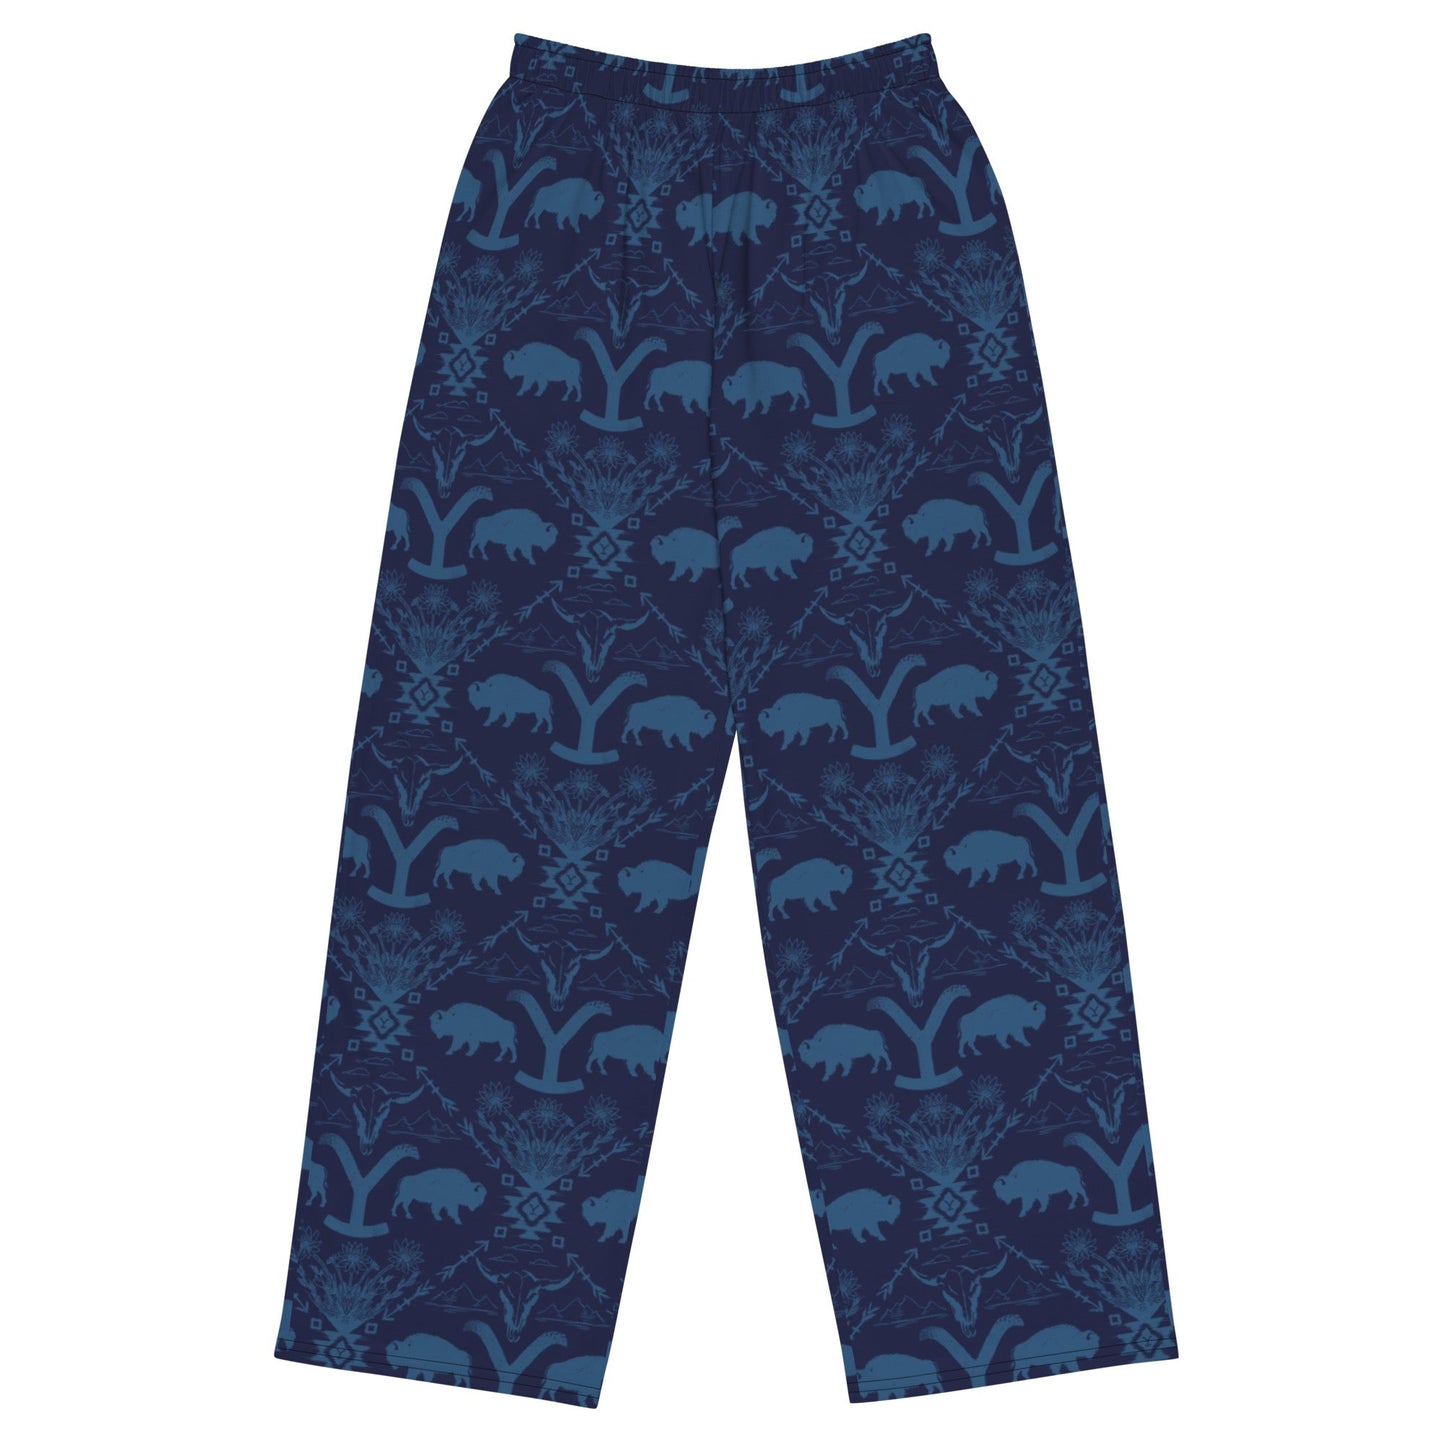 Yellowstone Buffalo Pajama Pants - Paramount Shop